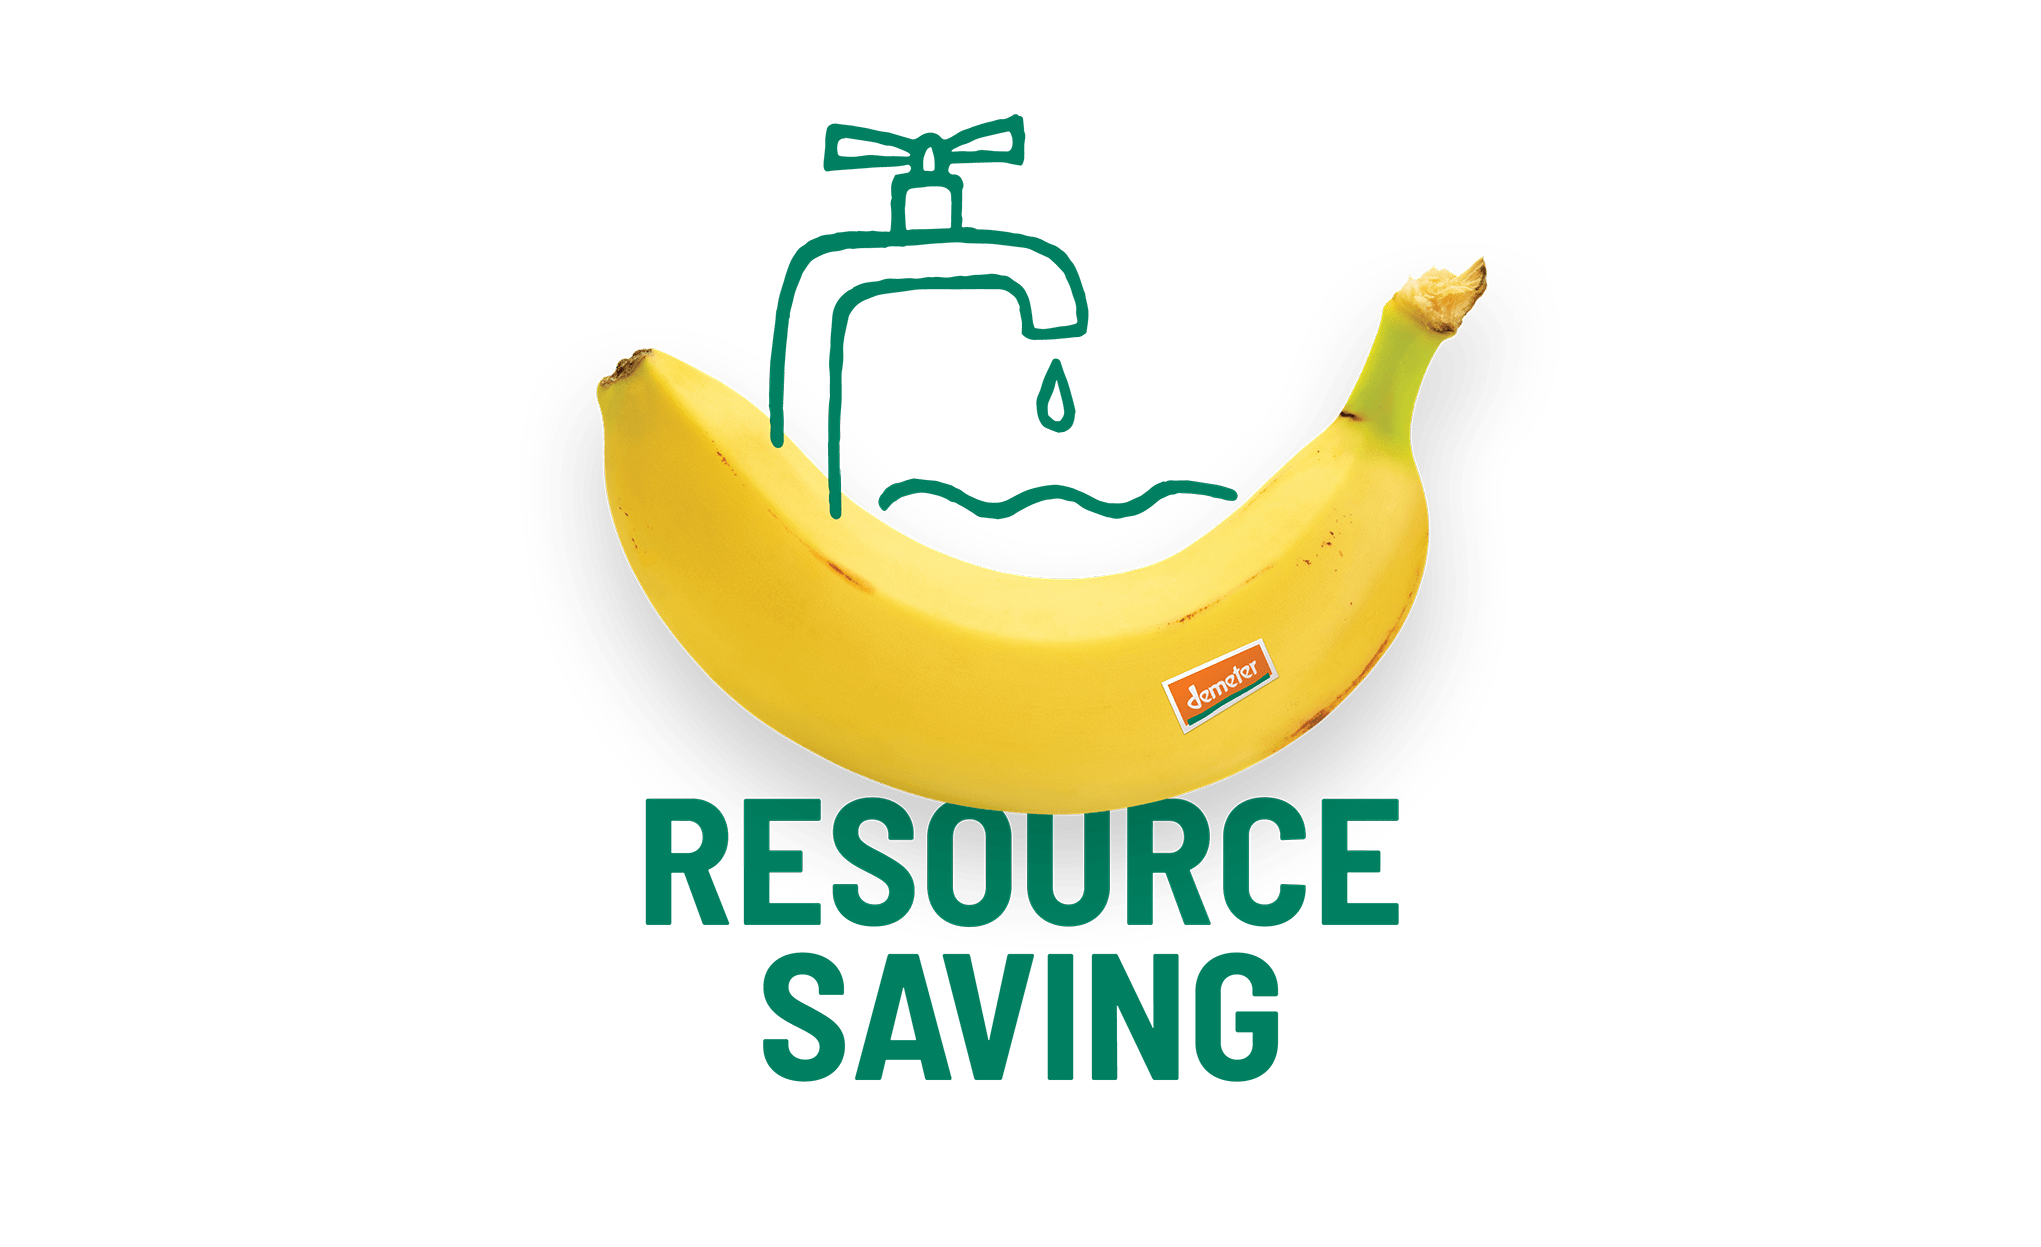 Bananes Bio & équitable, Drive & Livraison Courses 0 Déchet vrac